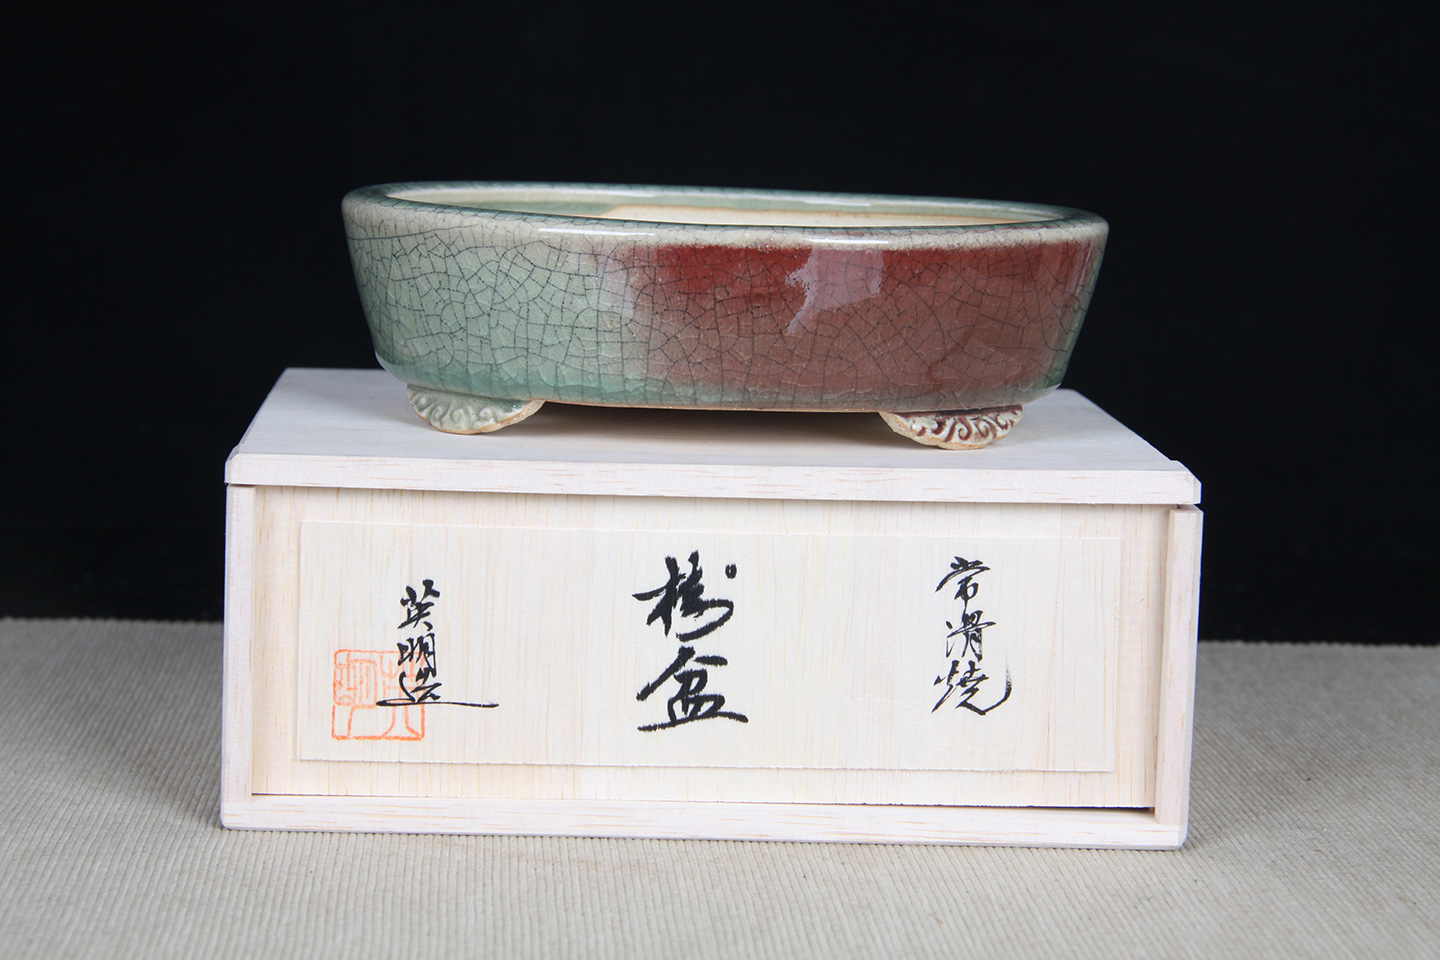 日本瓷器日本古老六大古窑之一常滑烧插花老盆栽-日本陶瓷-日本茶道-主 